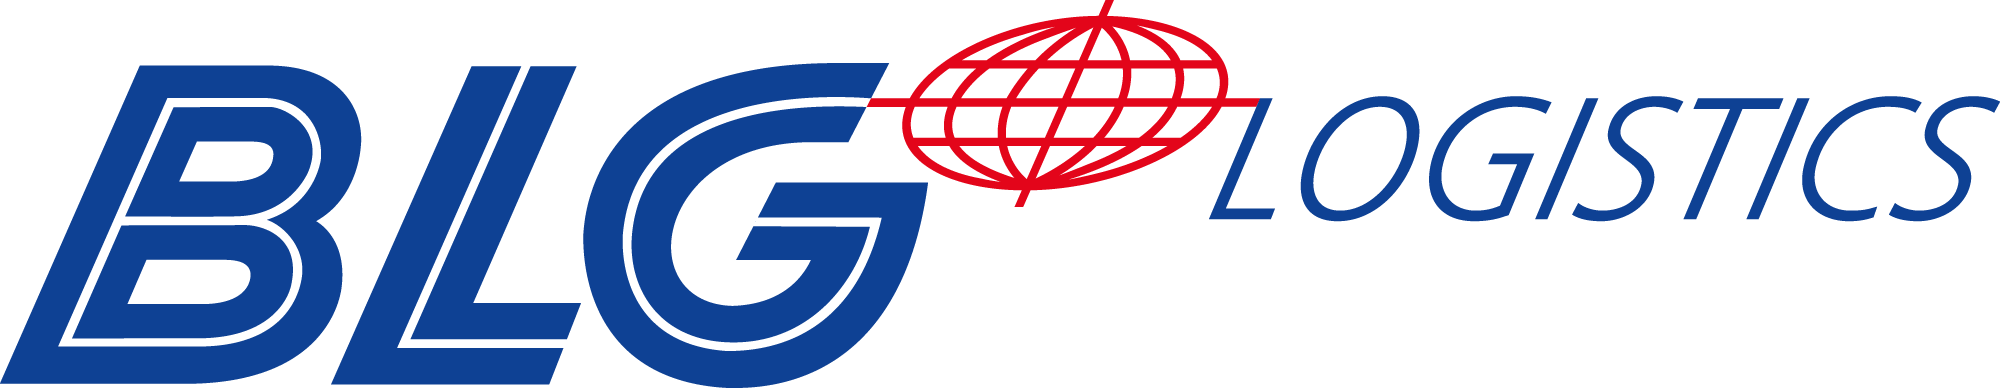 blg-logistics-logo